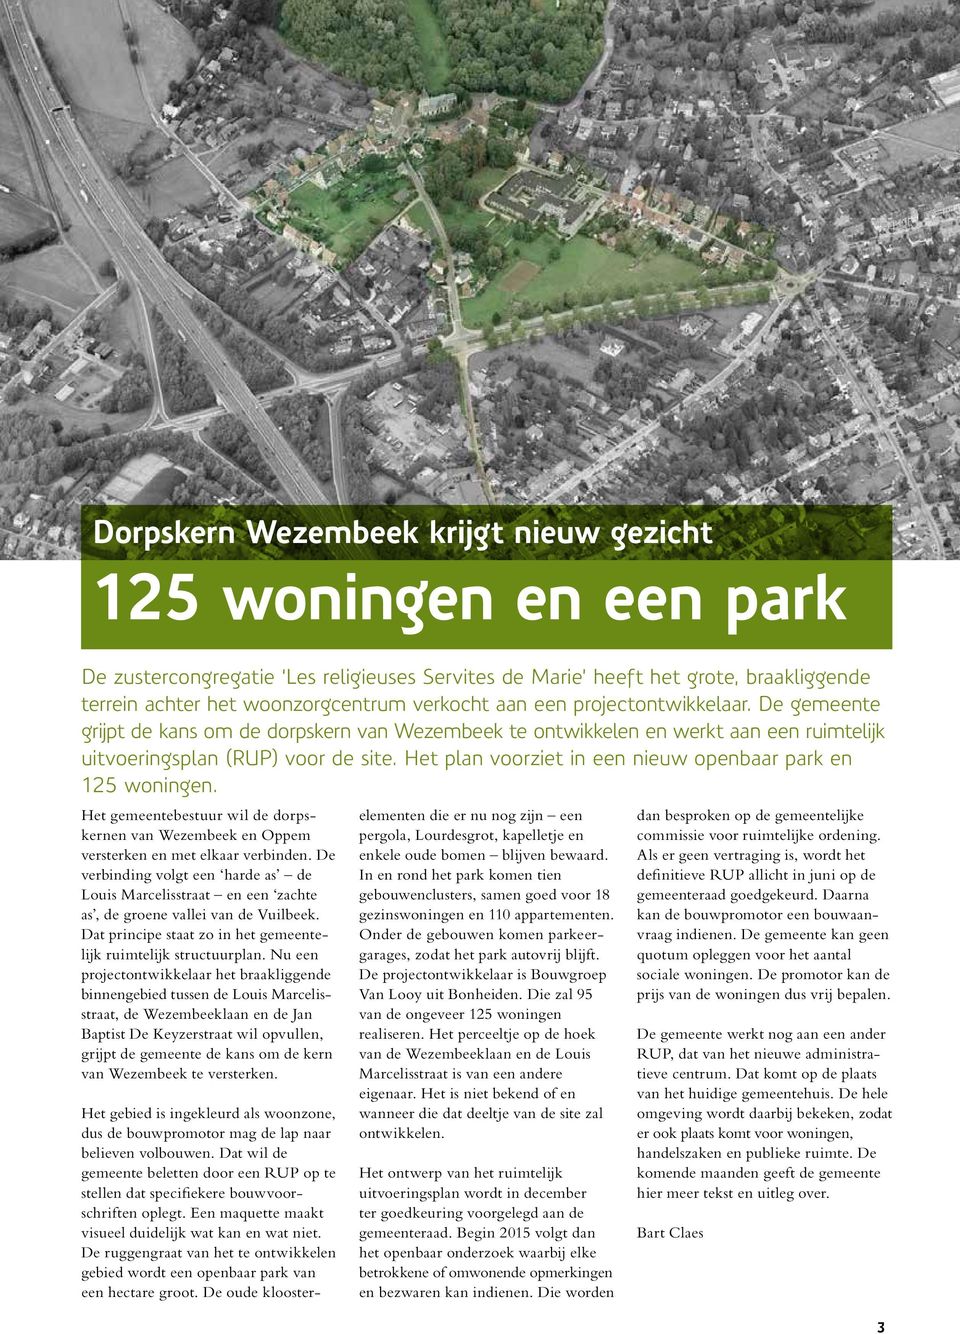 Het plan voorziet in een nieuw openbaar park en 125 woningen. Het gemeentebestuur wil de dorpskernen van Wezembeek en Oppem versterken en met elkaar verbinden.